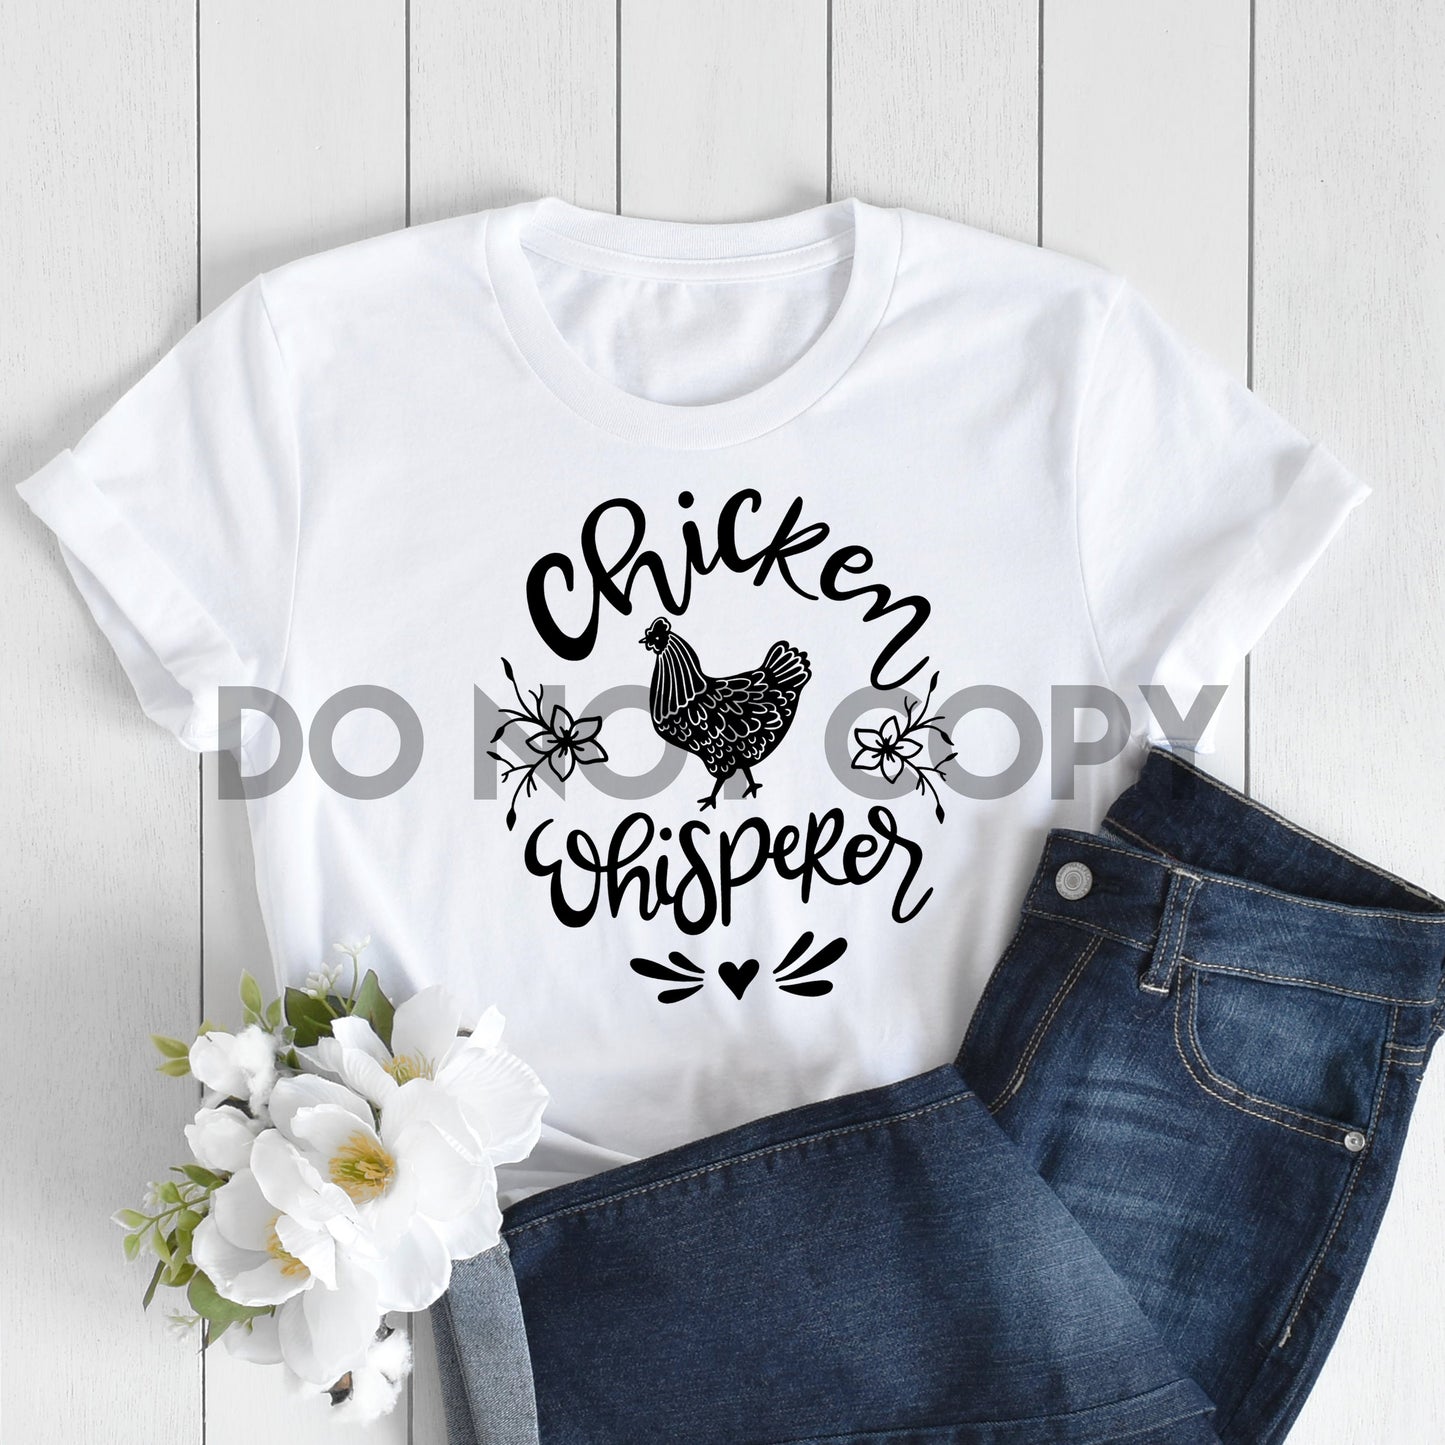 Chicken Whisperer one color Screen Print plastisol transfer